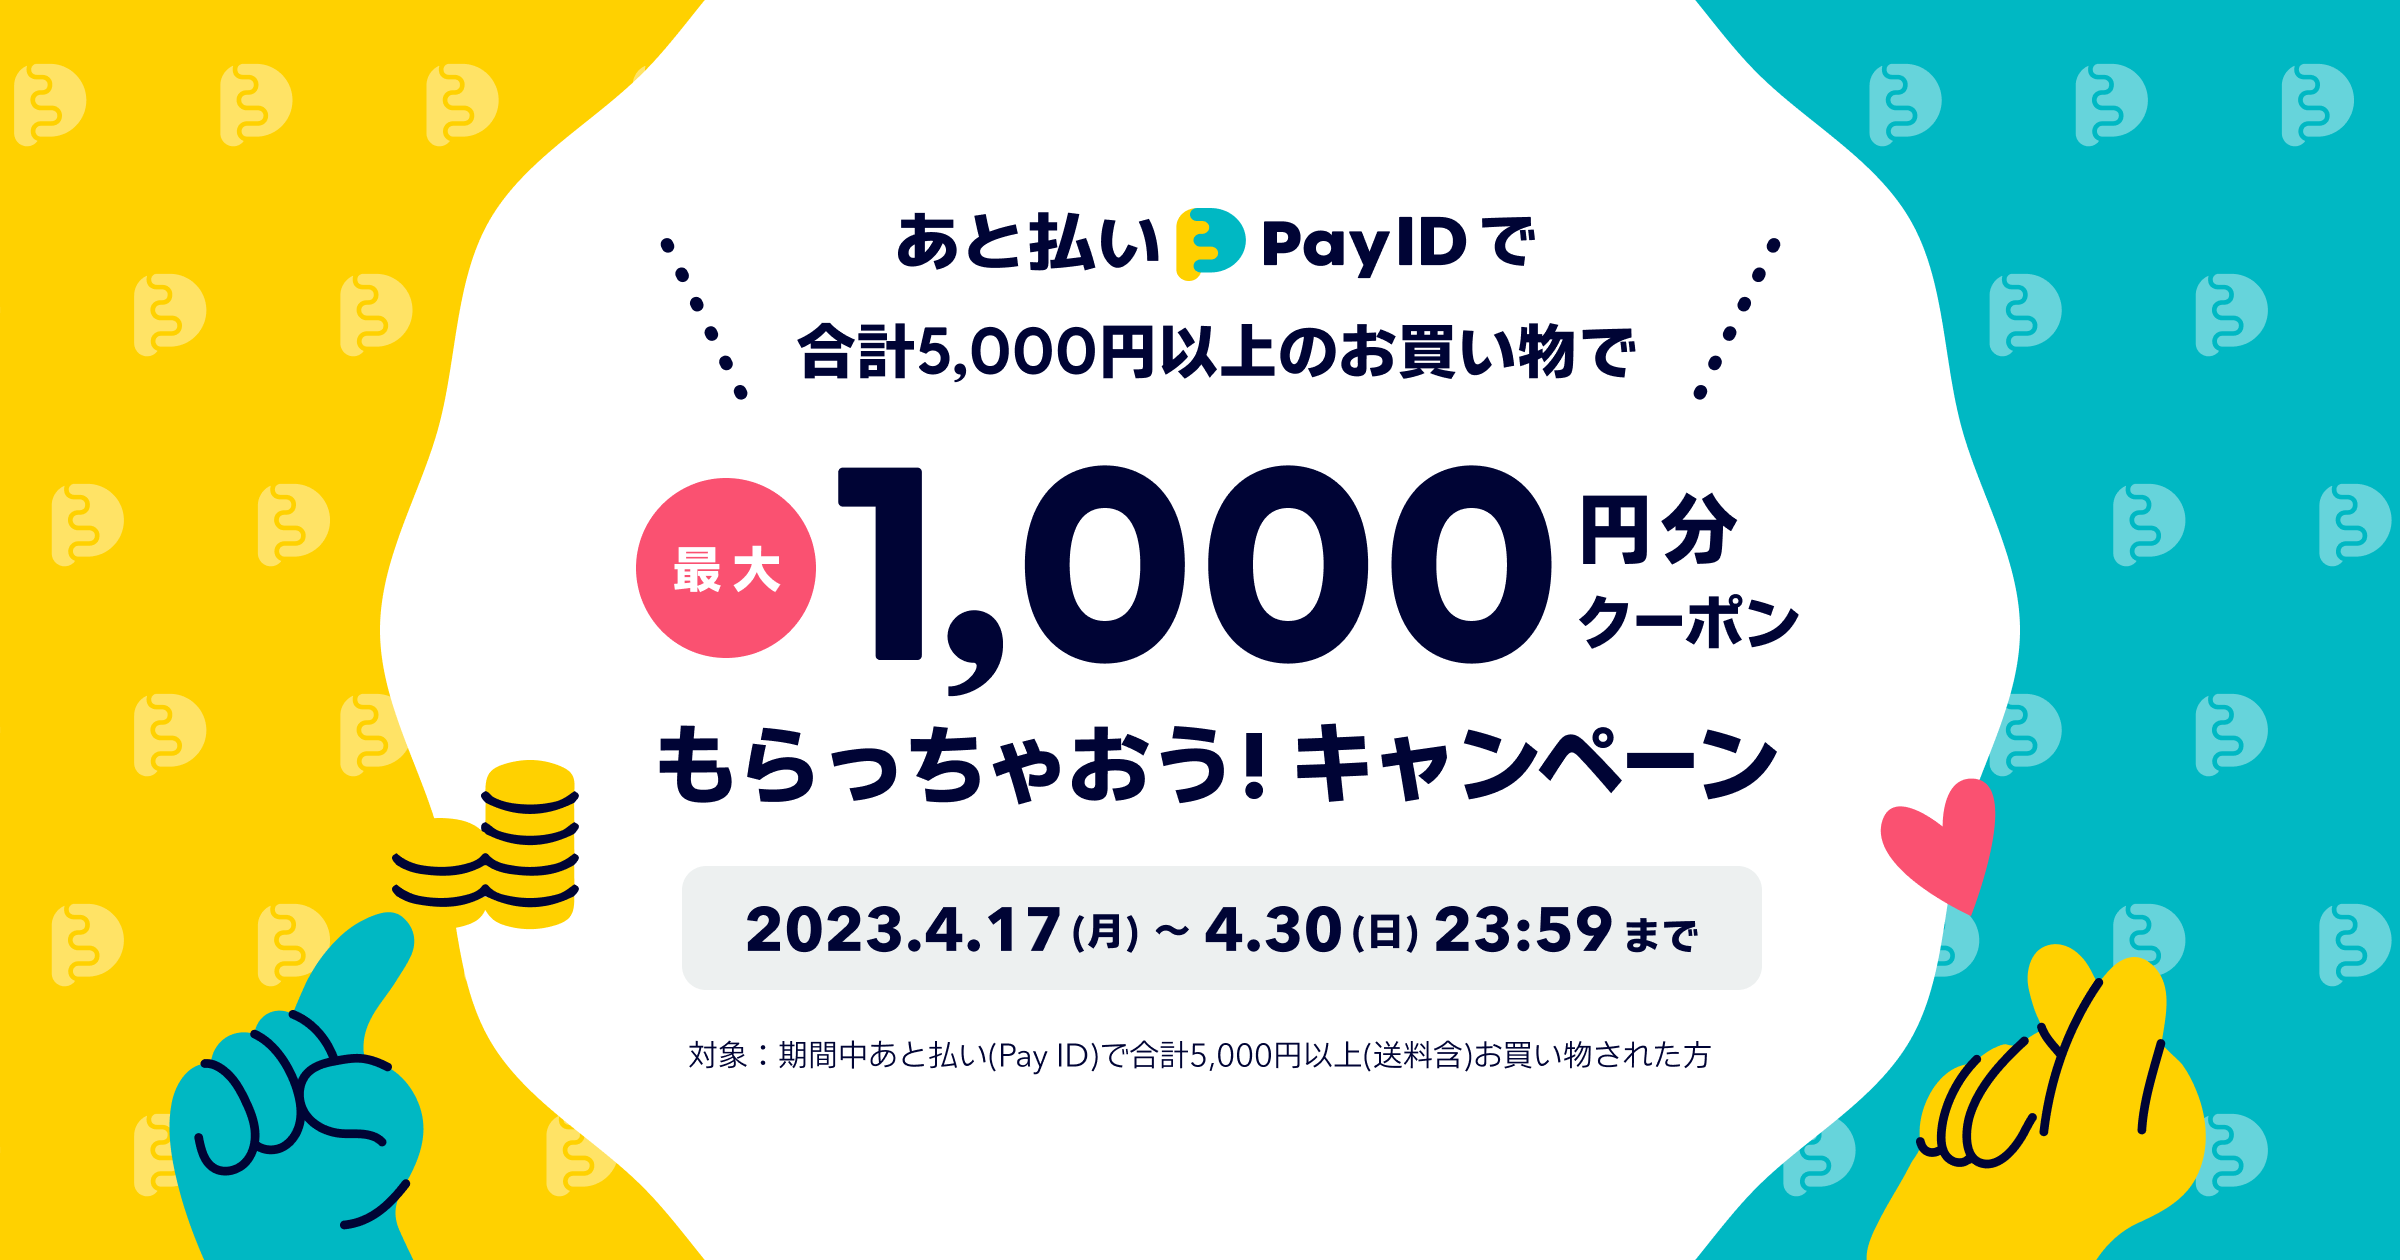 【あと払い（Pay ID）】で最大1,000円分のクーポンもらっちゃおう！キャンペーン開催のお知らせ